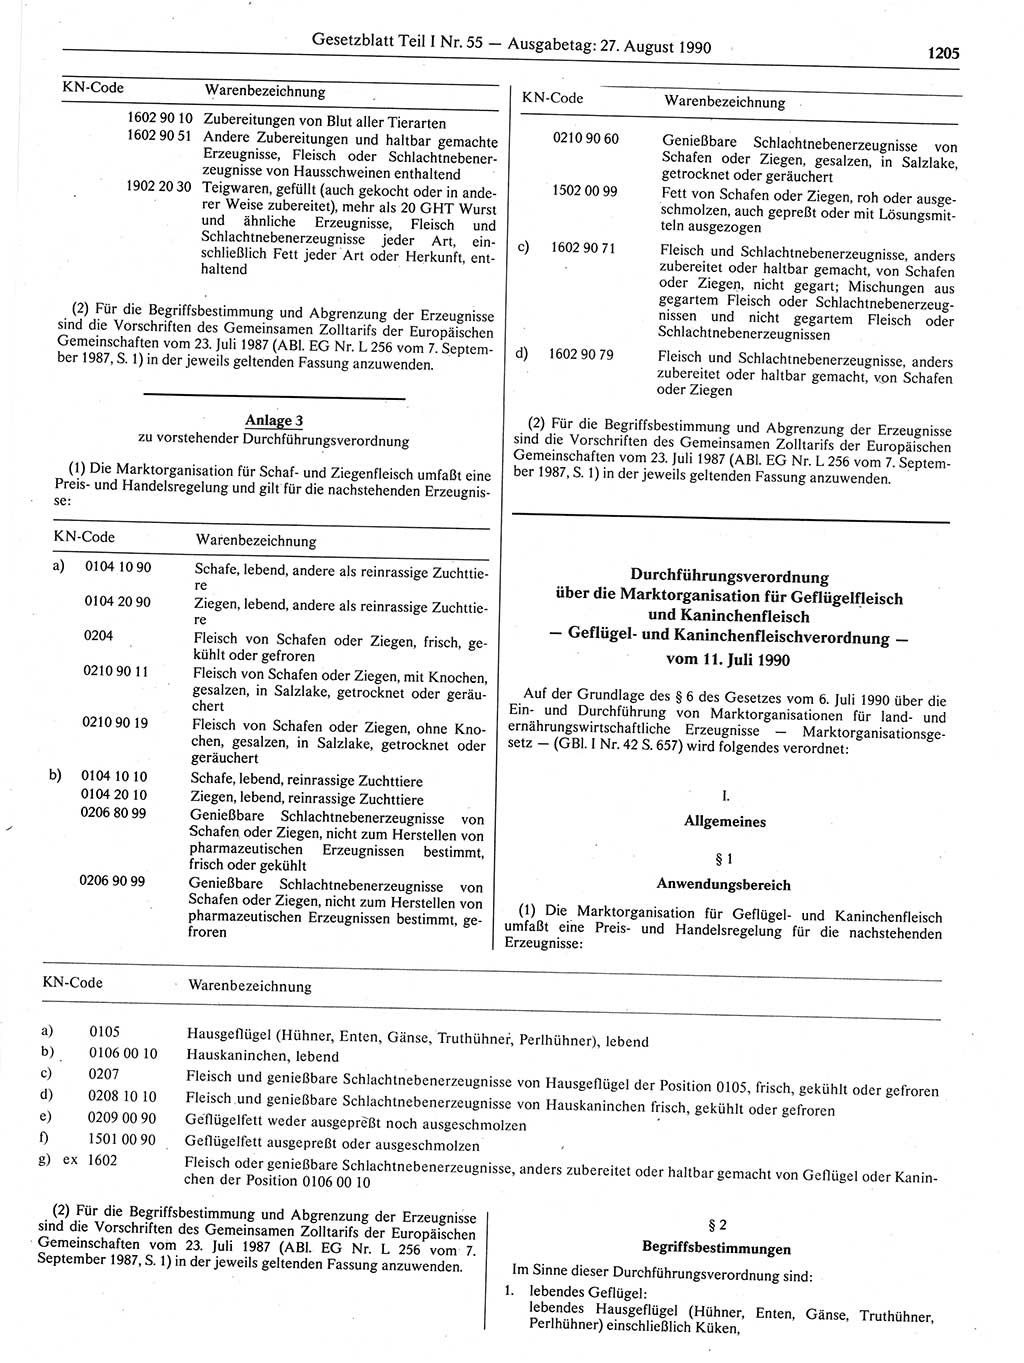 Gesetzblatt (GBl.) der Deutschen Demokratischen Republik (DDR) Teil Ⅰ 1990, Seite 1205 (GBl. DDR Ⅰ 1990, S. 1205)